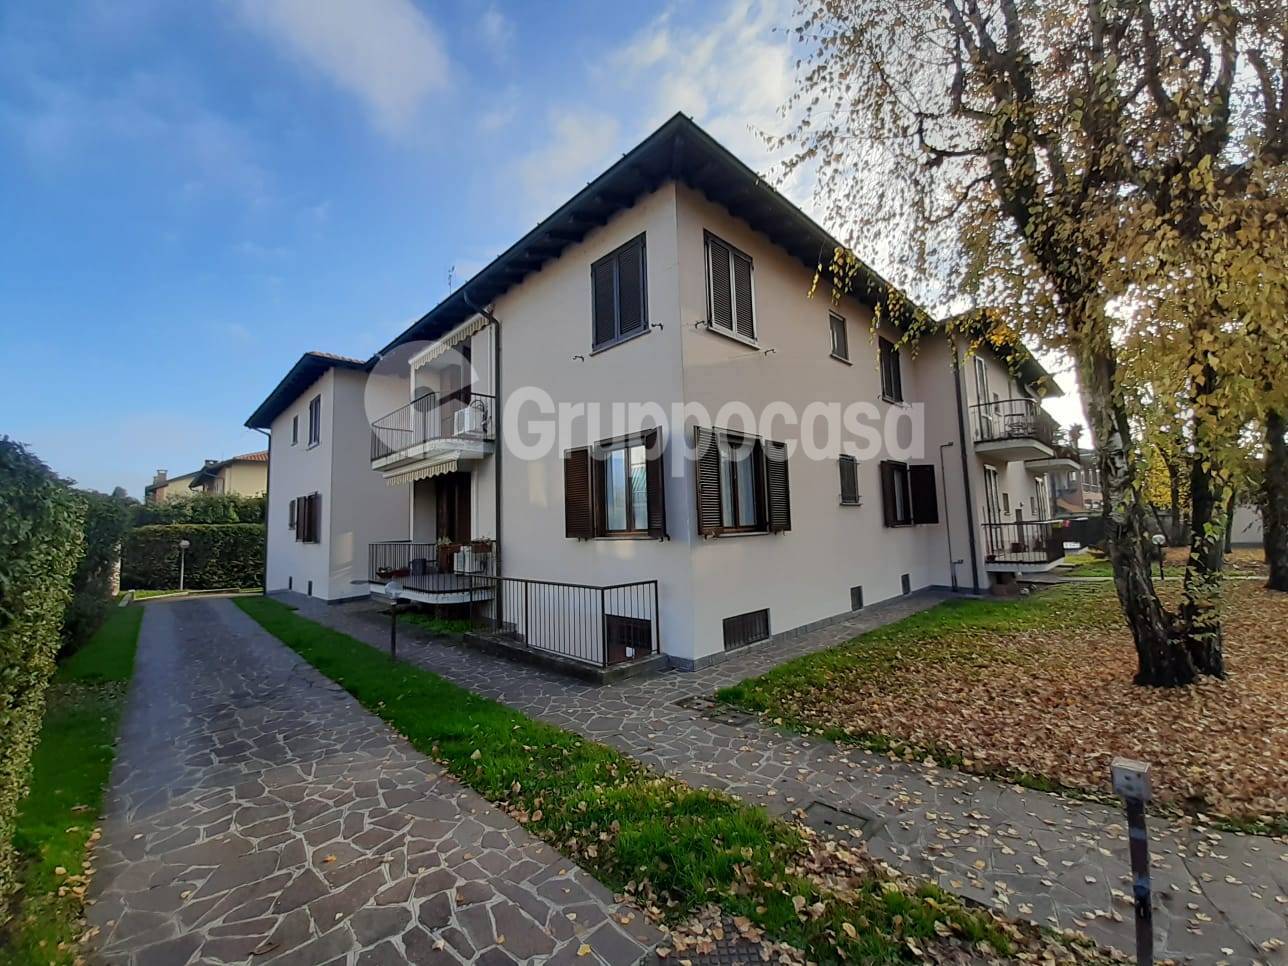 Appartamento in vendita a Robecco sul Naviglio, 3 locali, prezzo € 157.000 | PortaleAgenzieImmobiliari.it